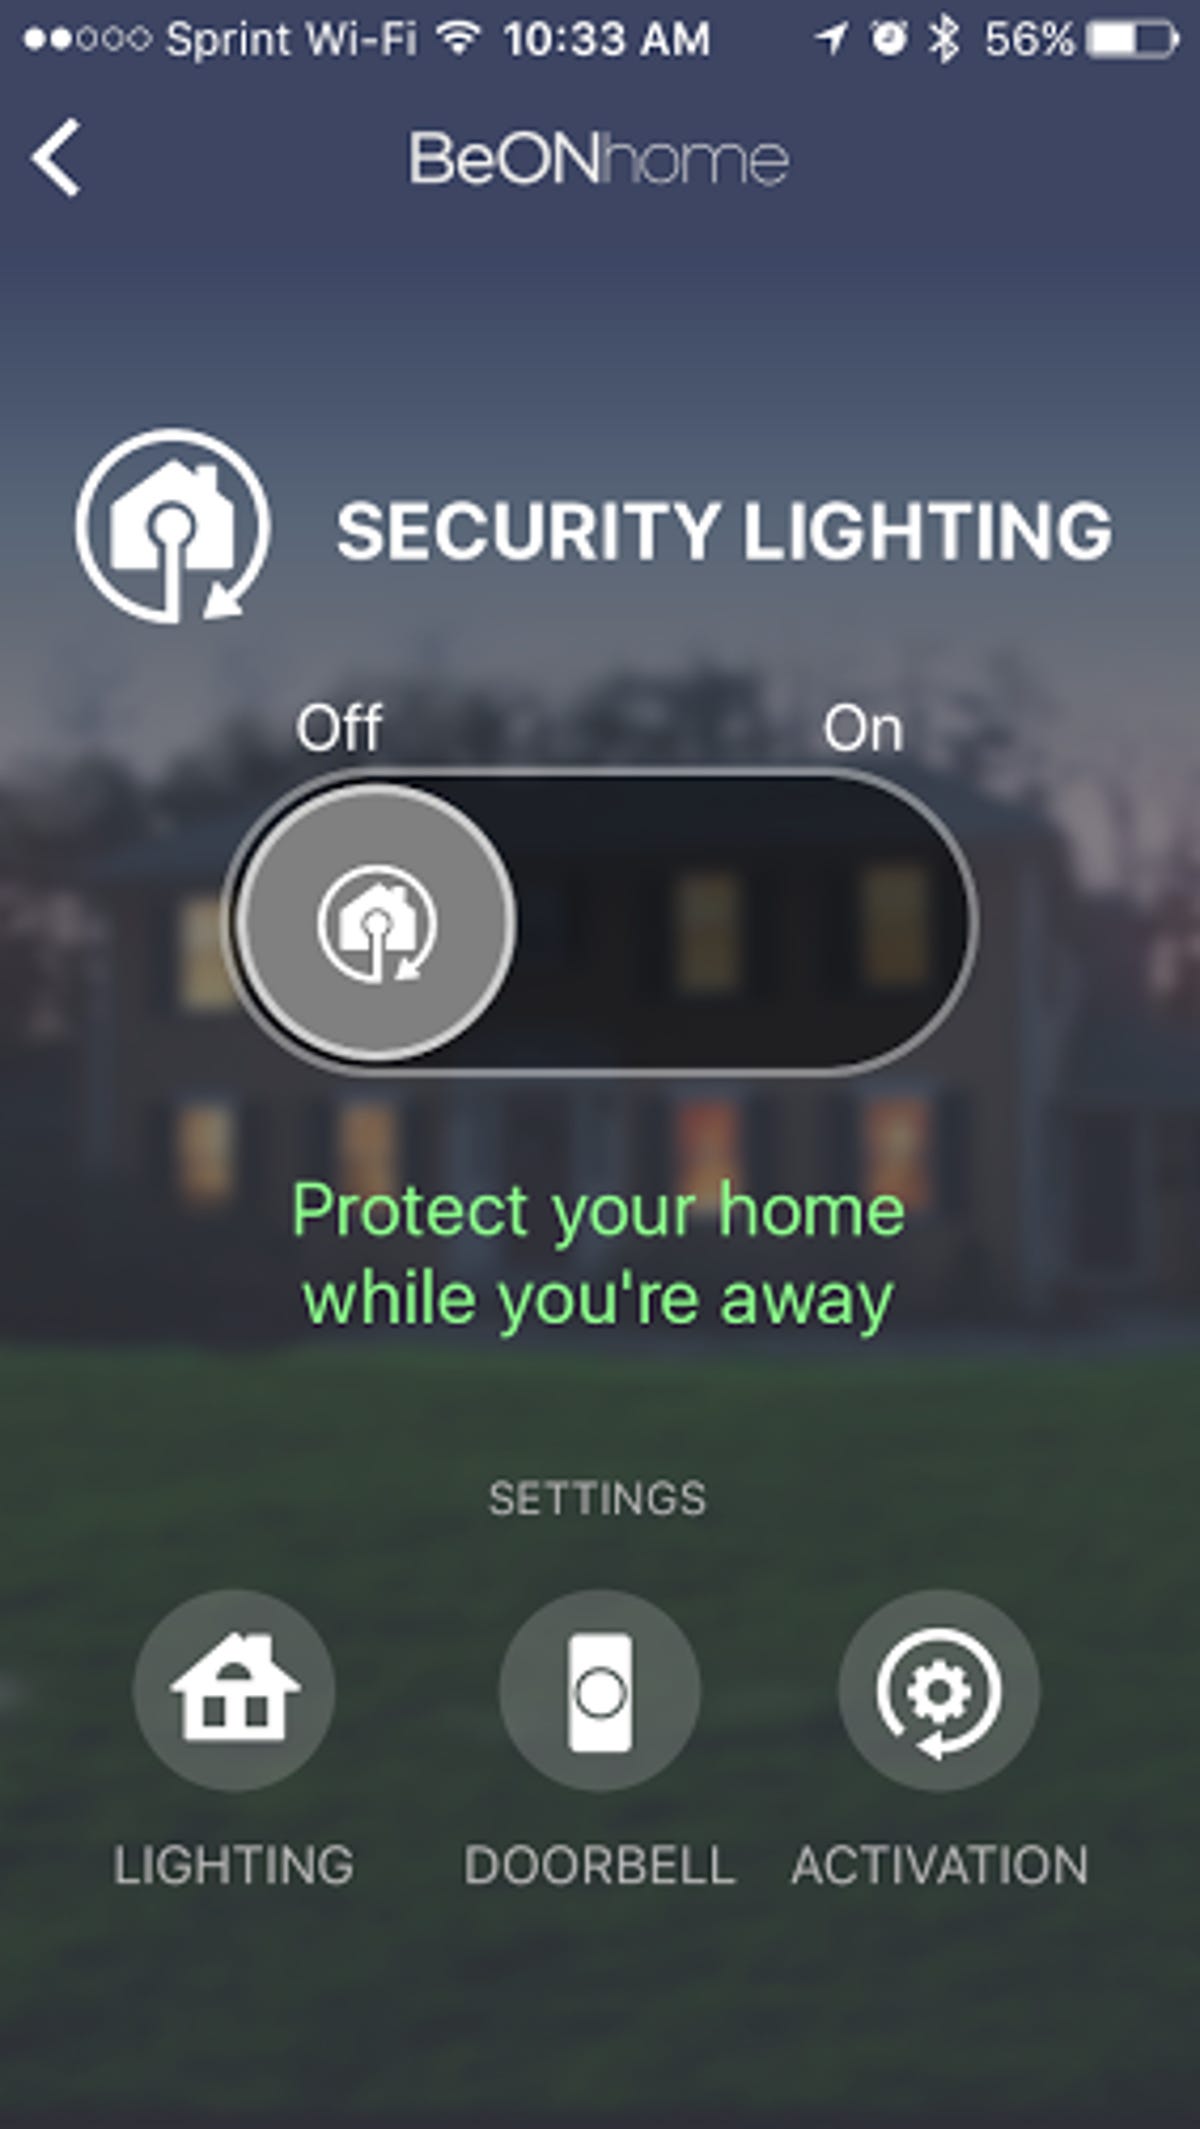 beon-app-security-lighting.png